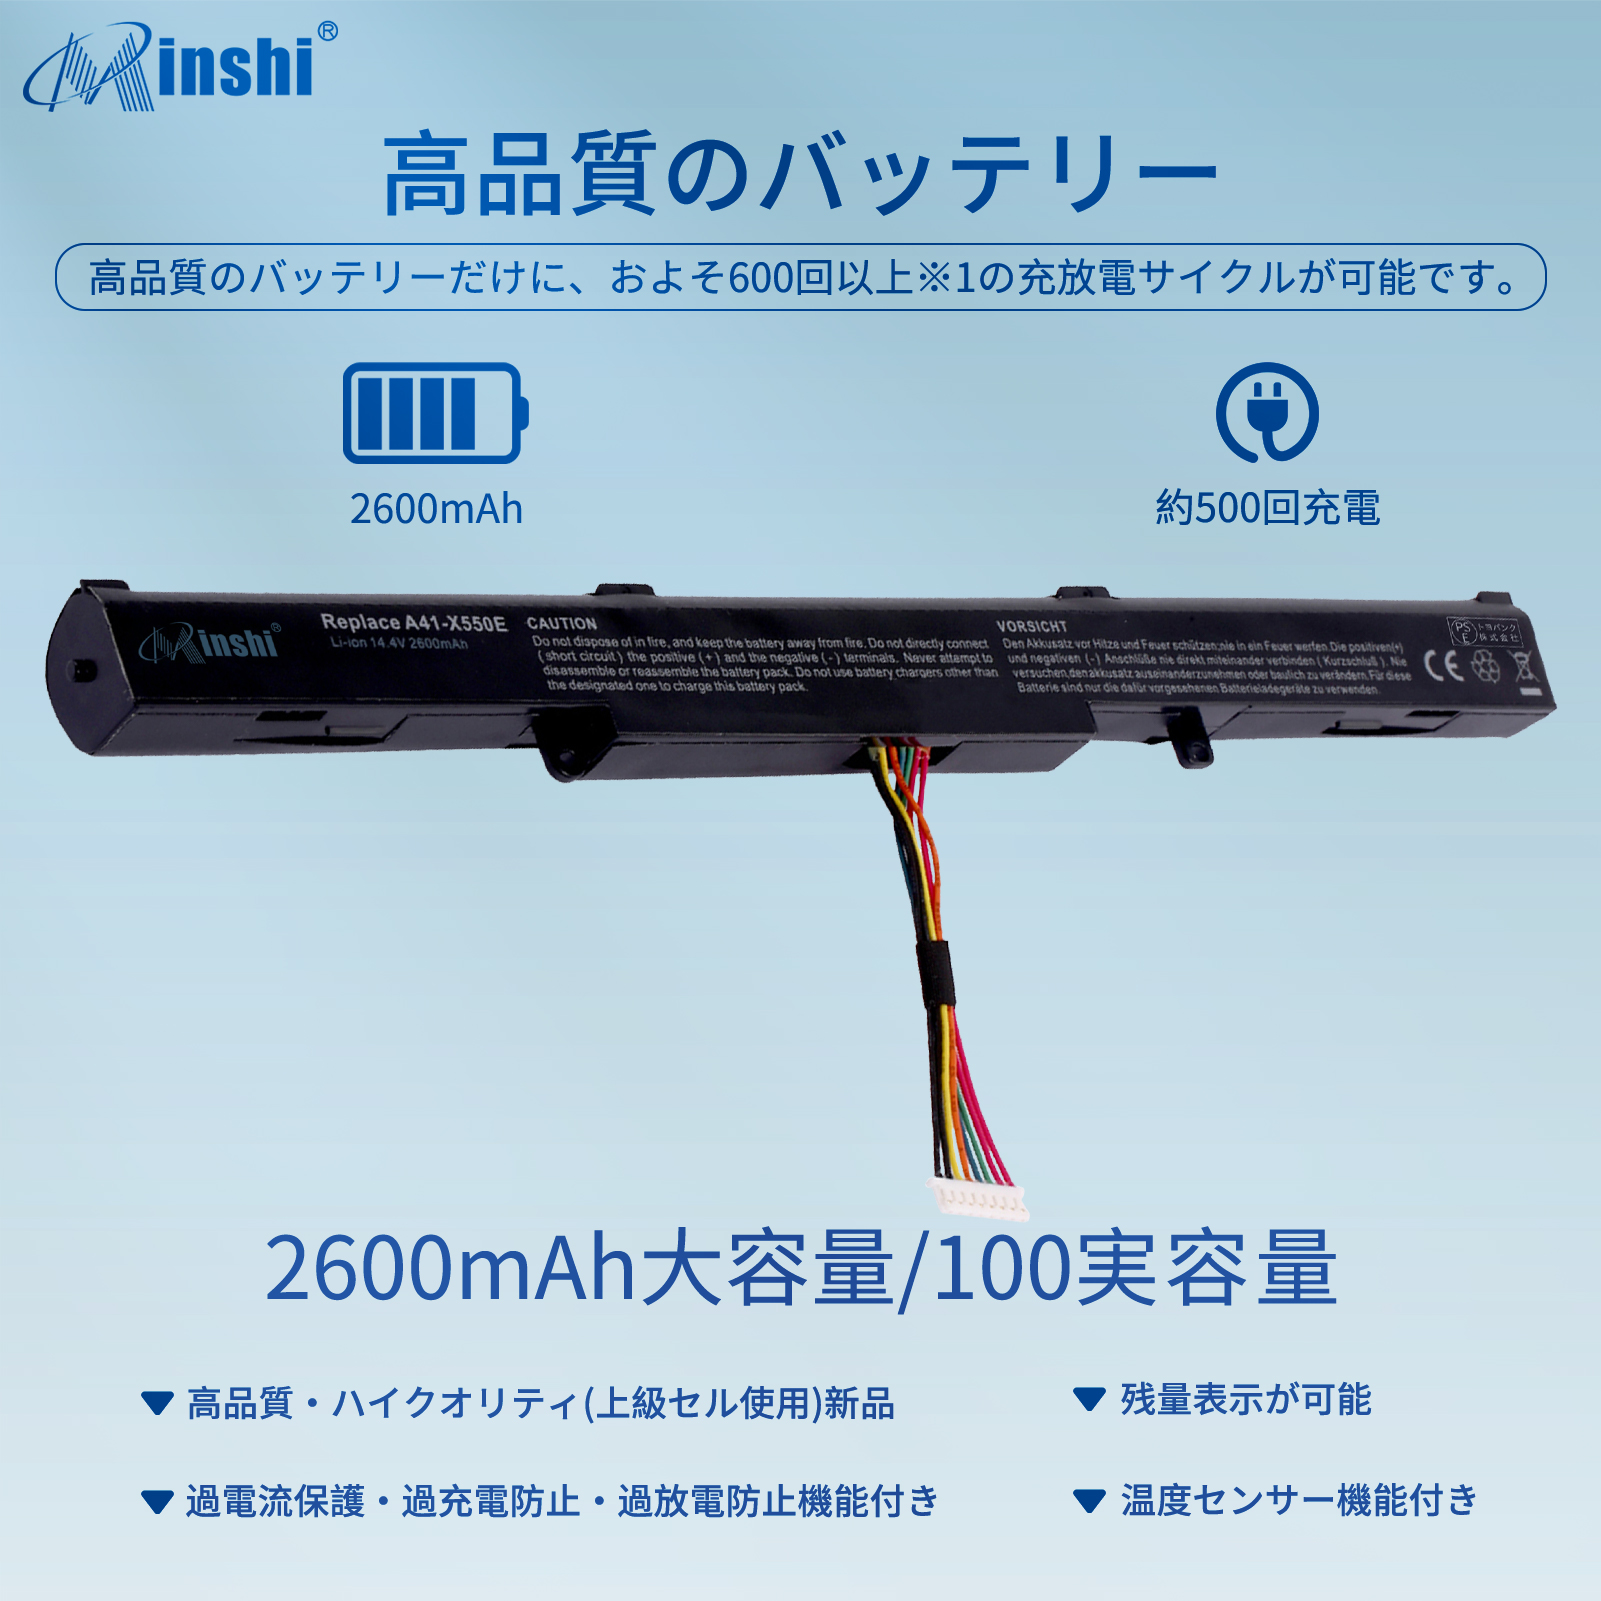 minshi】Asus ASUS X550DP【2600mAh 14.4V】Asus A41-X550E対応用 高